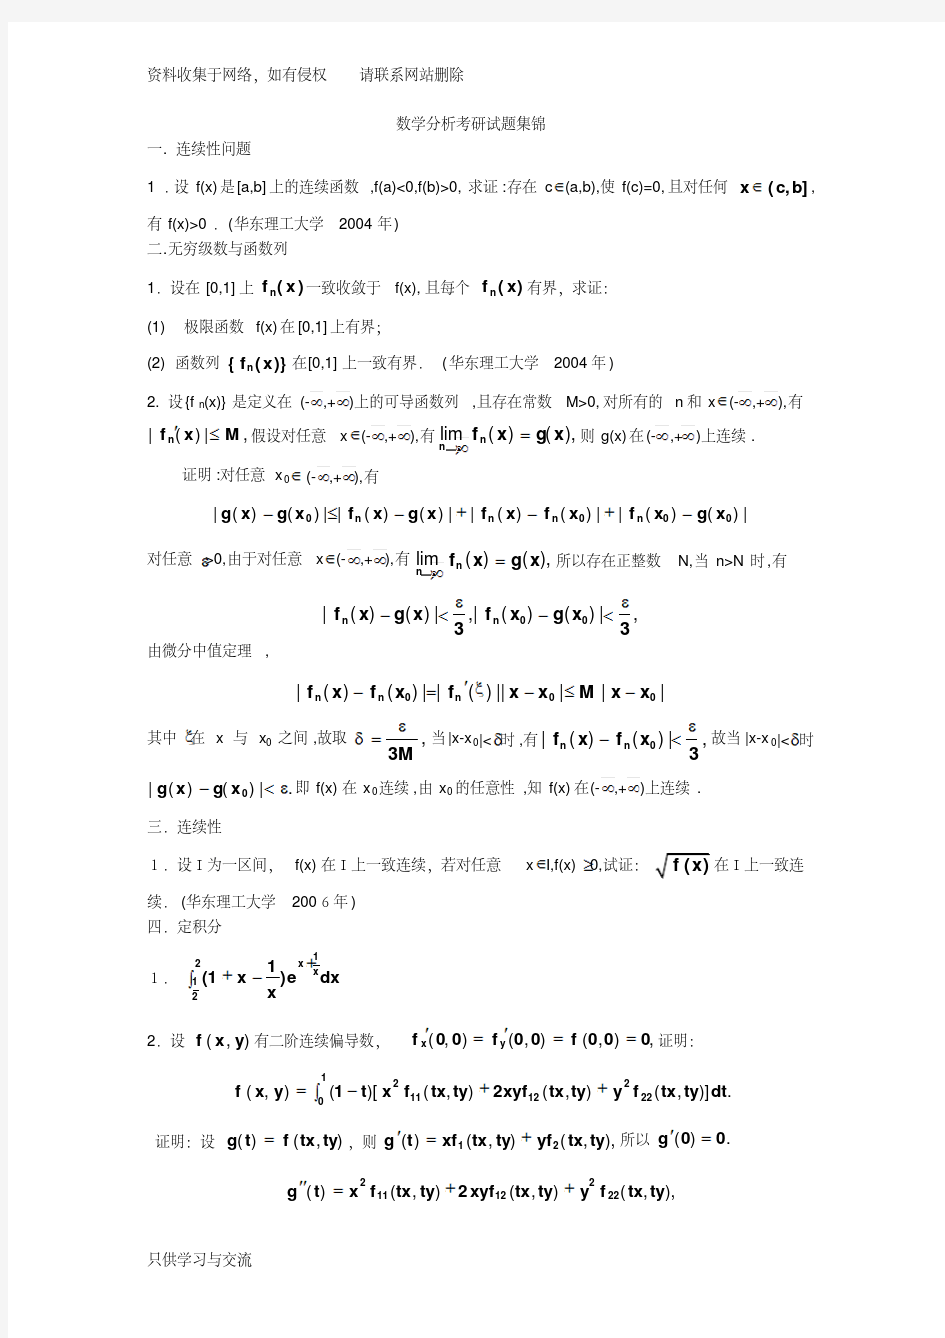 【精选资料】数学分析考研试题集锦